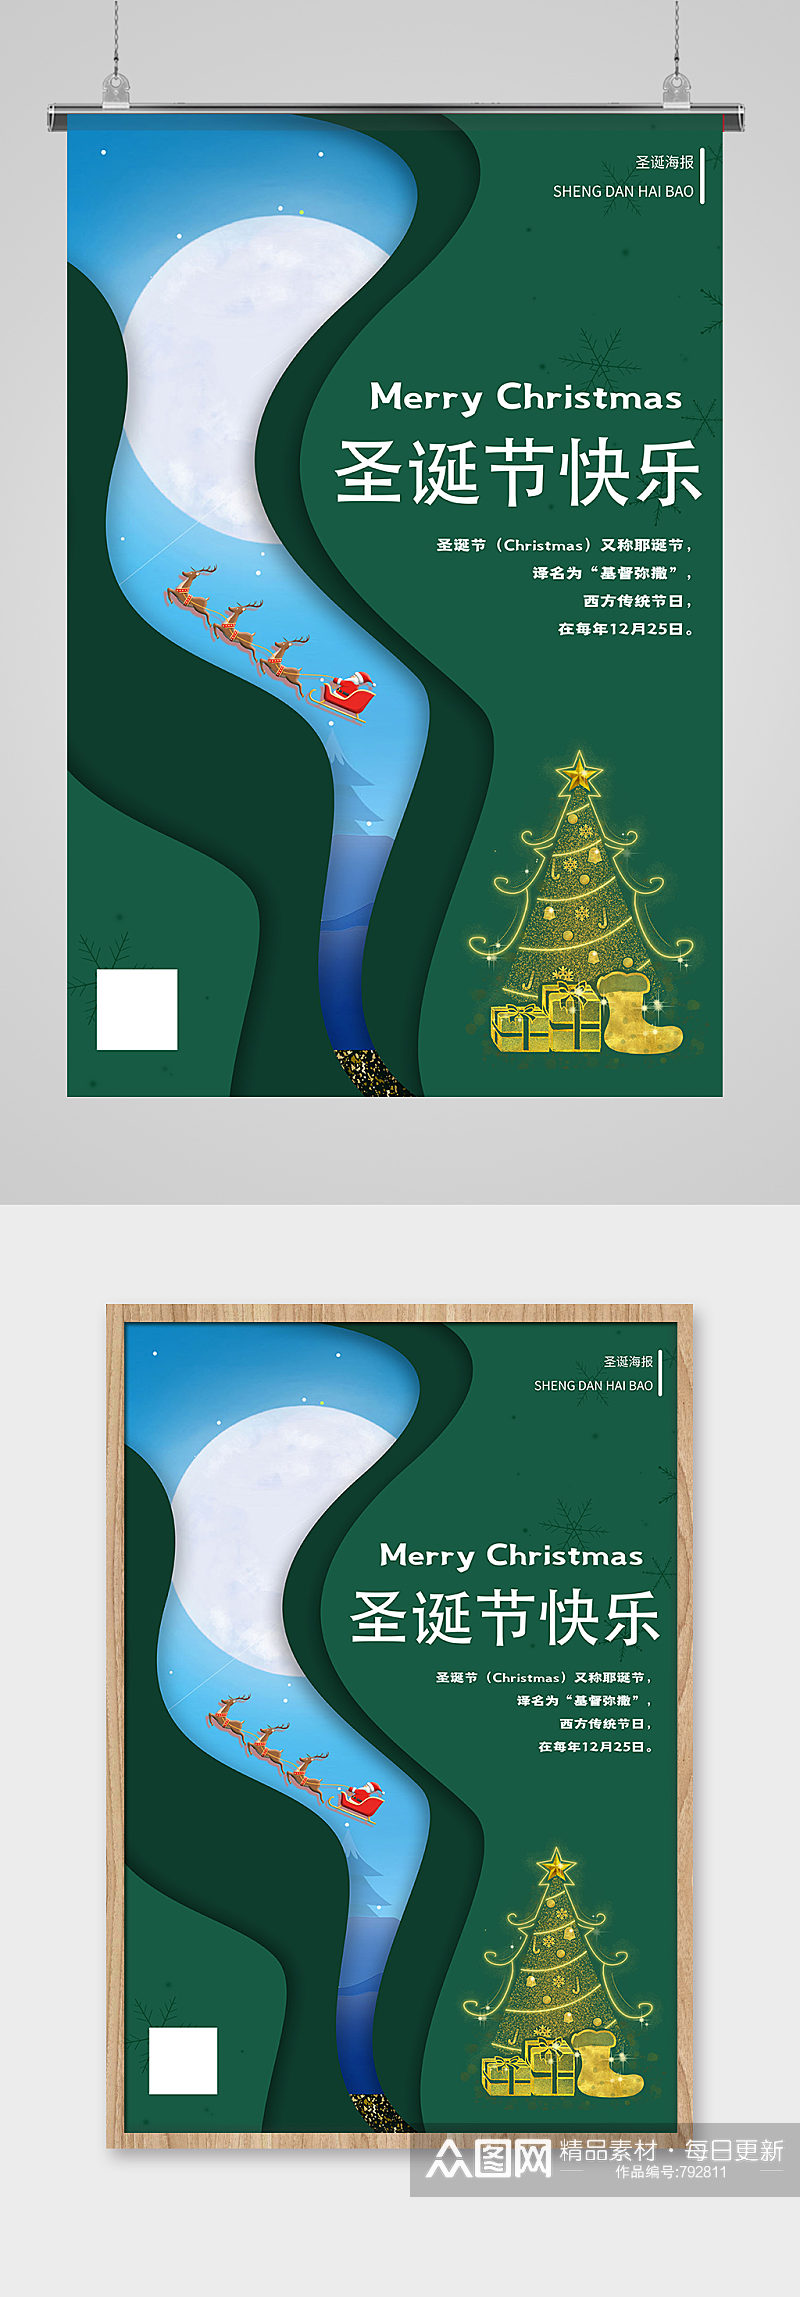 圣诞节快乐绿色剪纸插画风海报素材